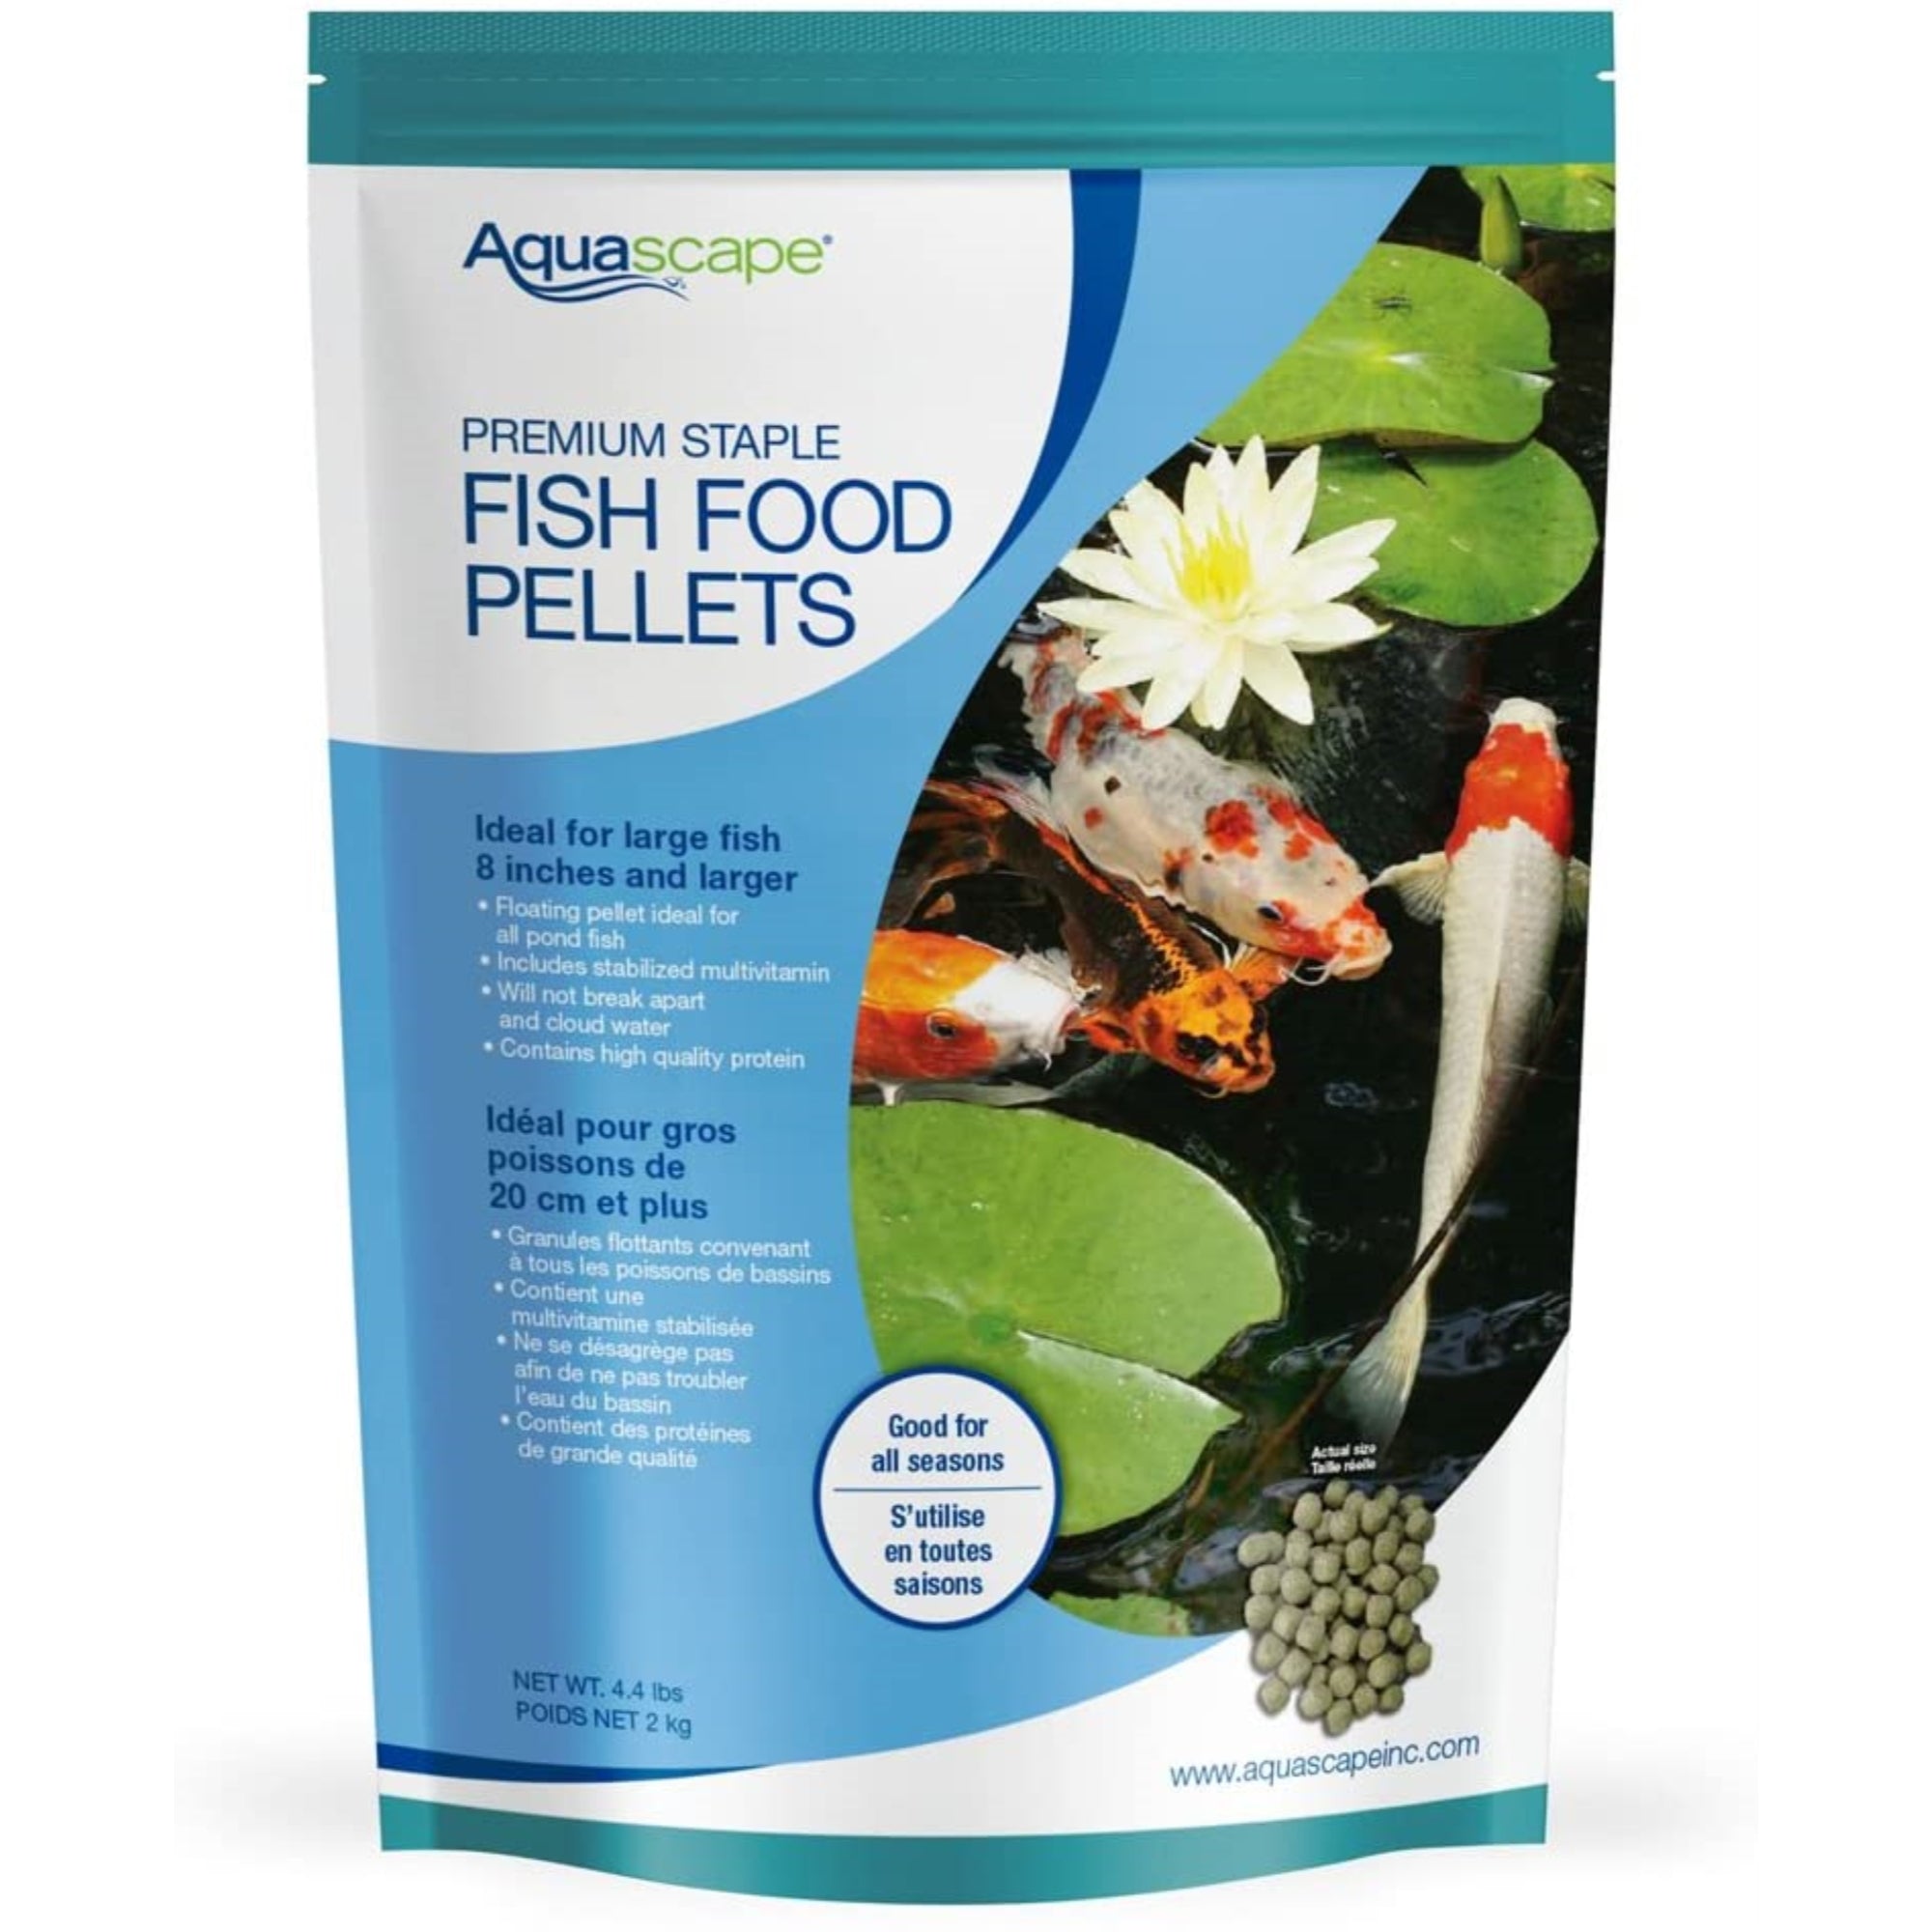 Aquascape Premium Staple Fish Food Pellets for Large Pond Fish, Large Pellet, 4.4 pounds